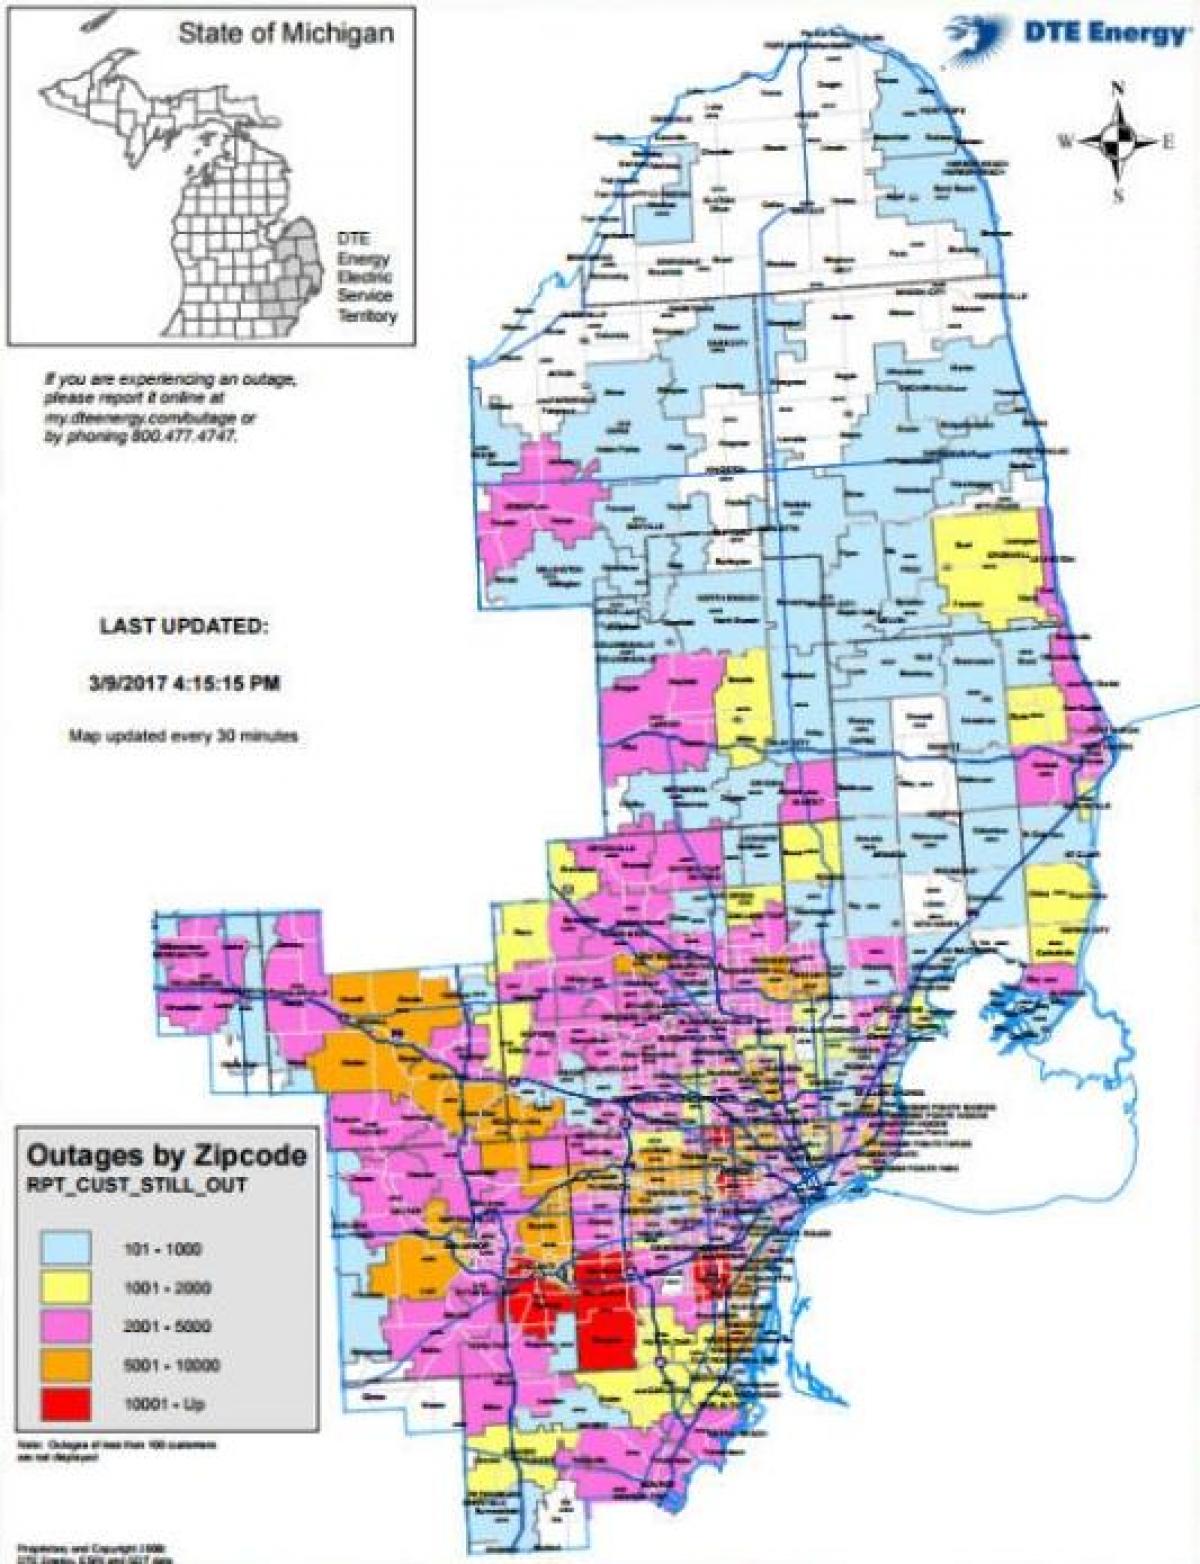 Detroit edison cúp điện bản đồ